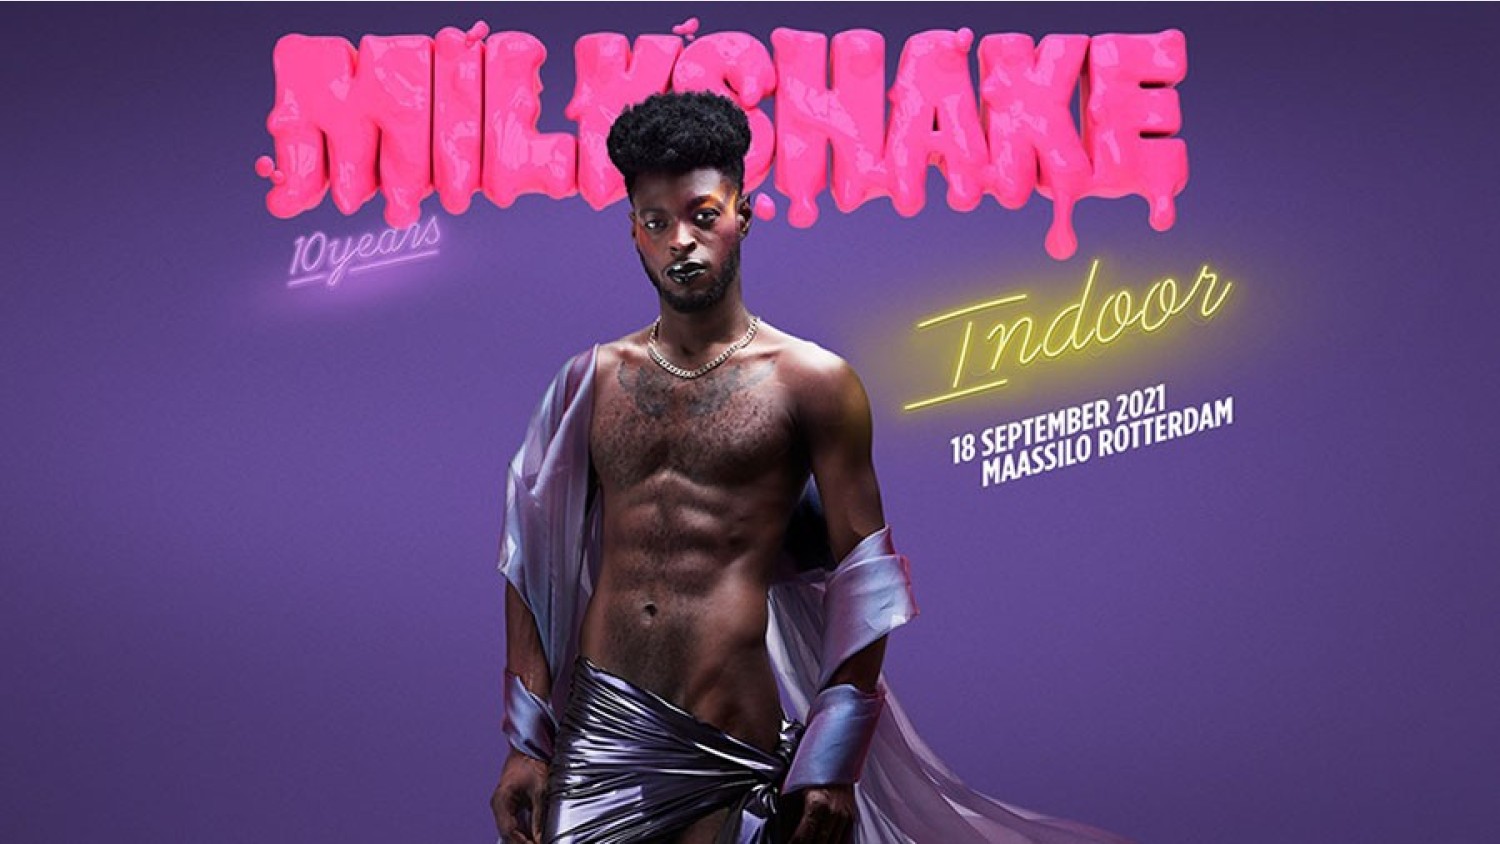 Party nieuws: Milkshake is terug met Indoor editie in de Maassilo